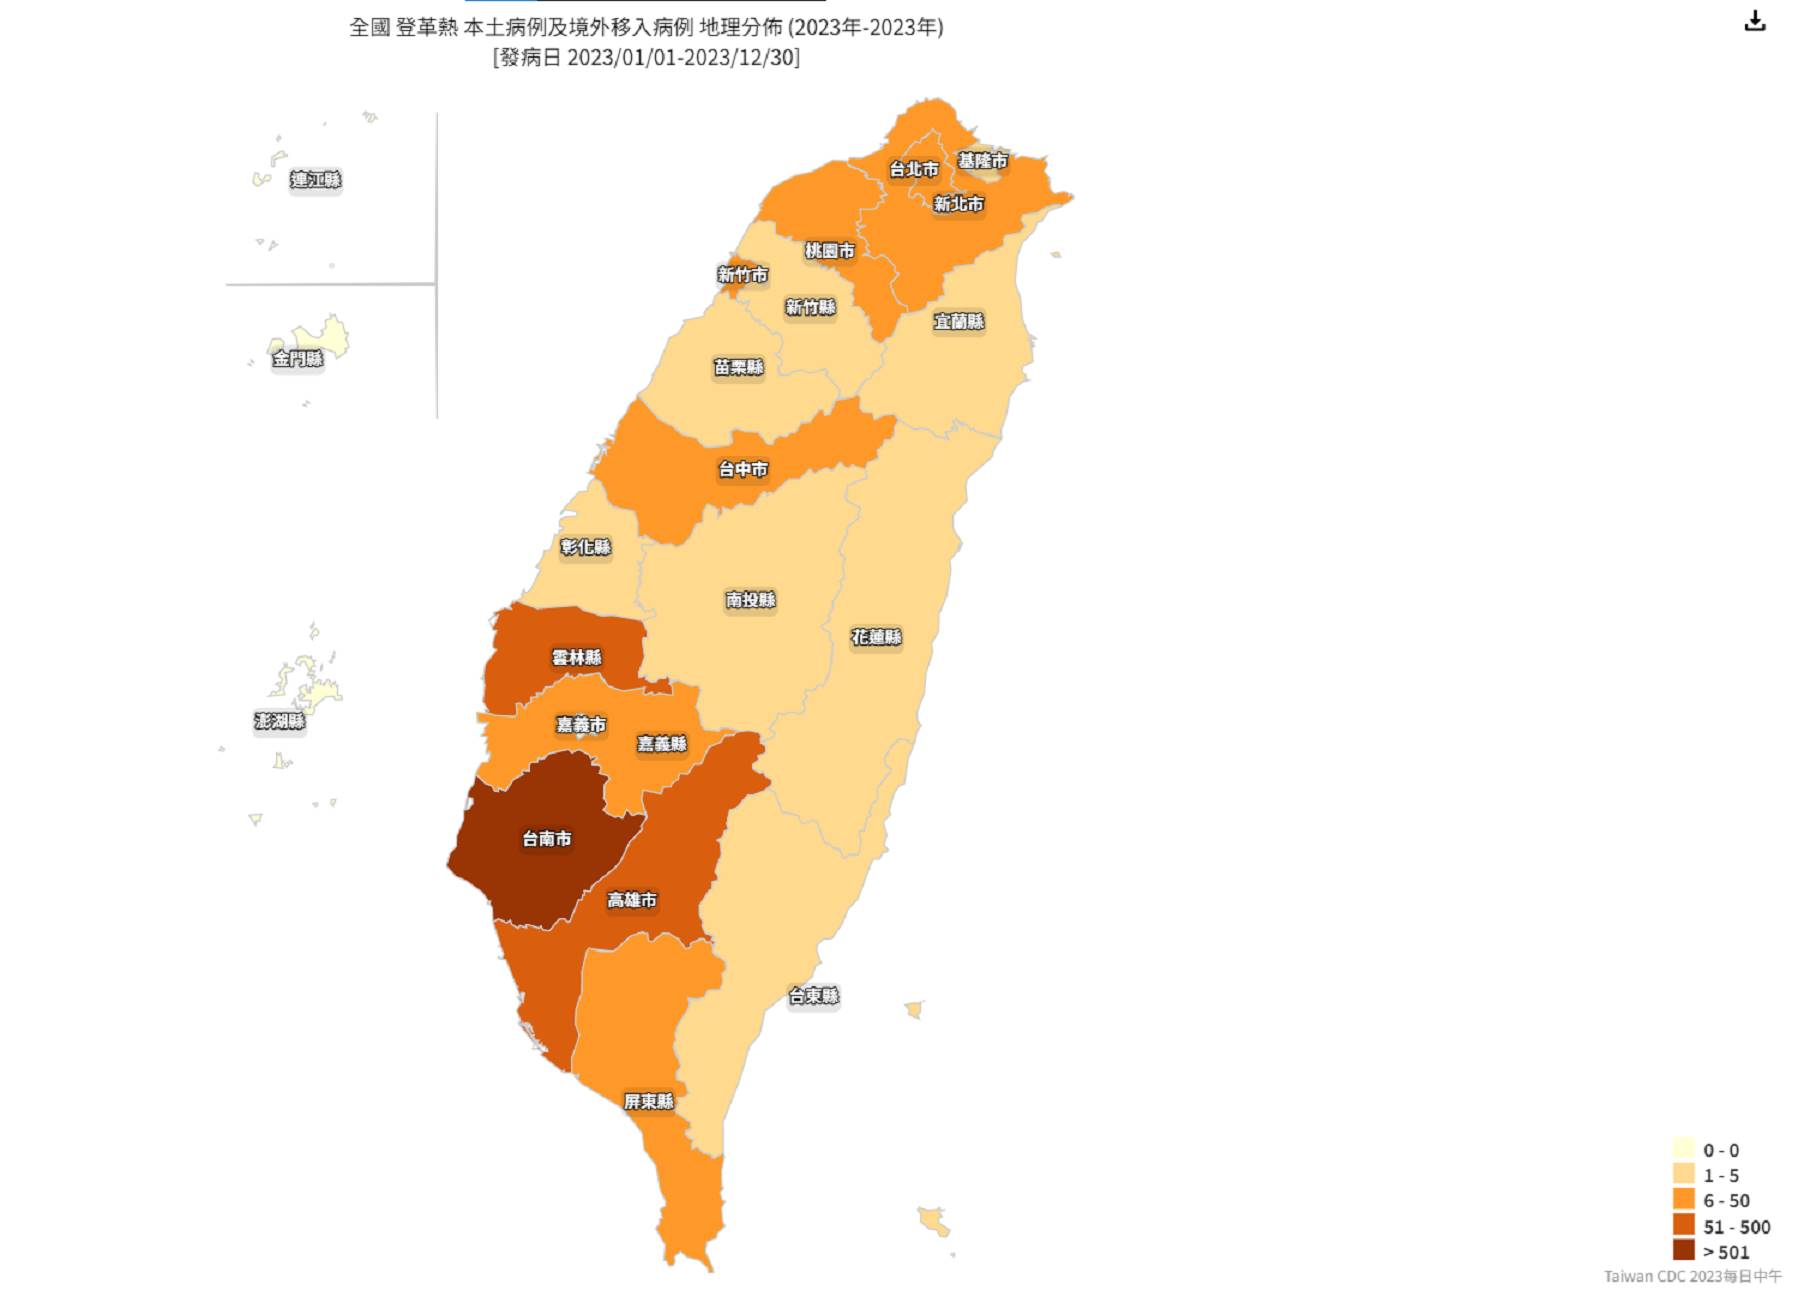 本土登革熱疫情持續在台灣各地升溫，截止昨（23）日，台北市文山區出現首例個案，確診者近期無出國也沒有前往中南部，將持續關注以追查出感染源頭；而台南市單日確診人數破百達106人，其中以安南區的31例為最高確診數。